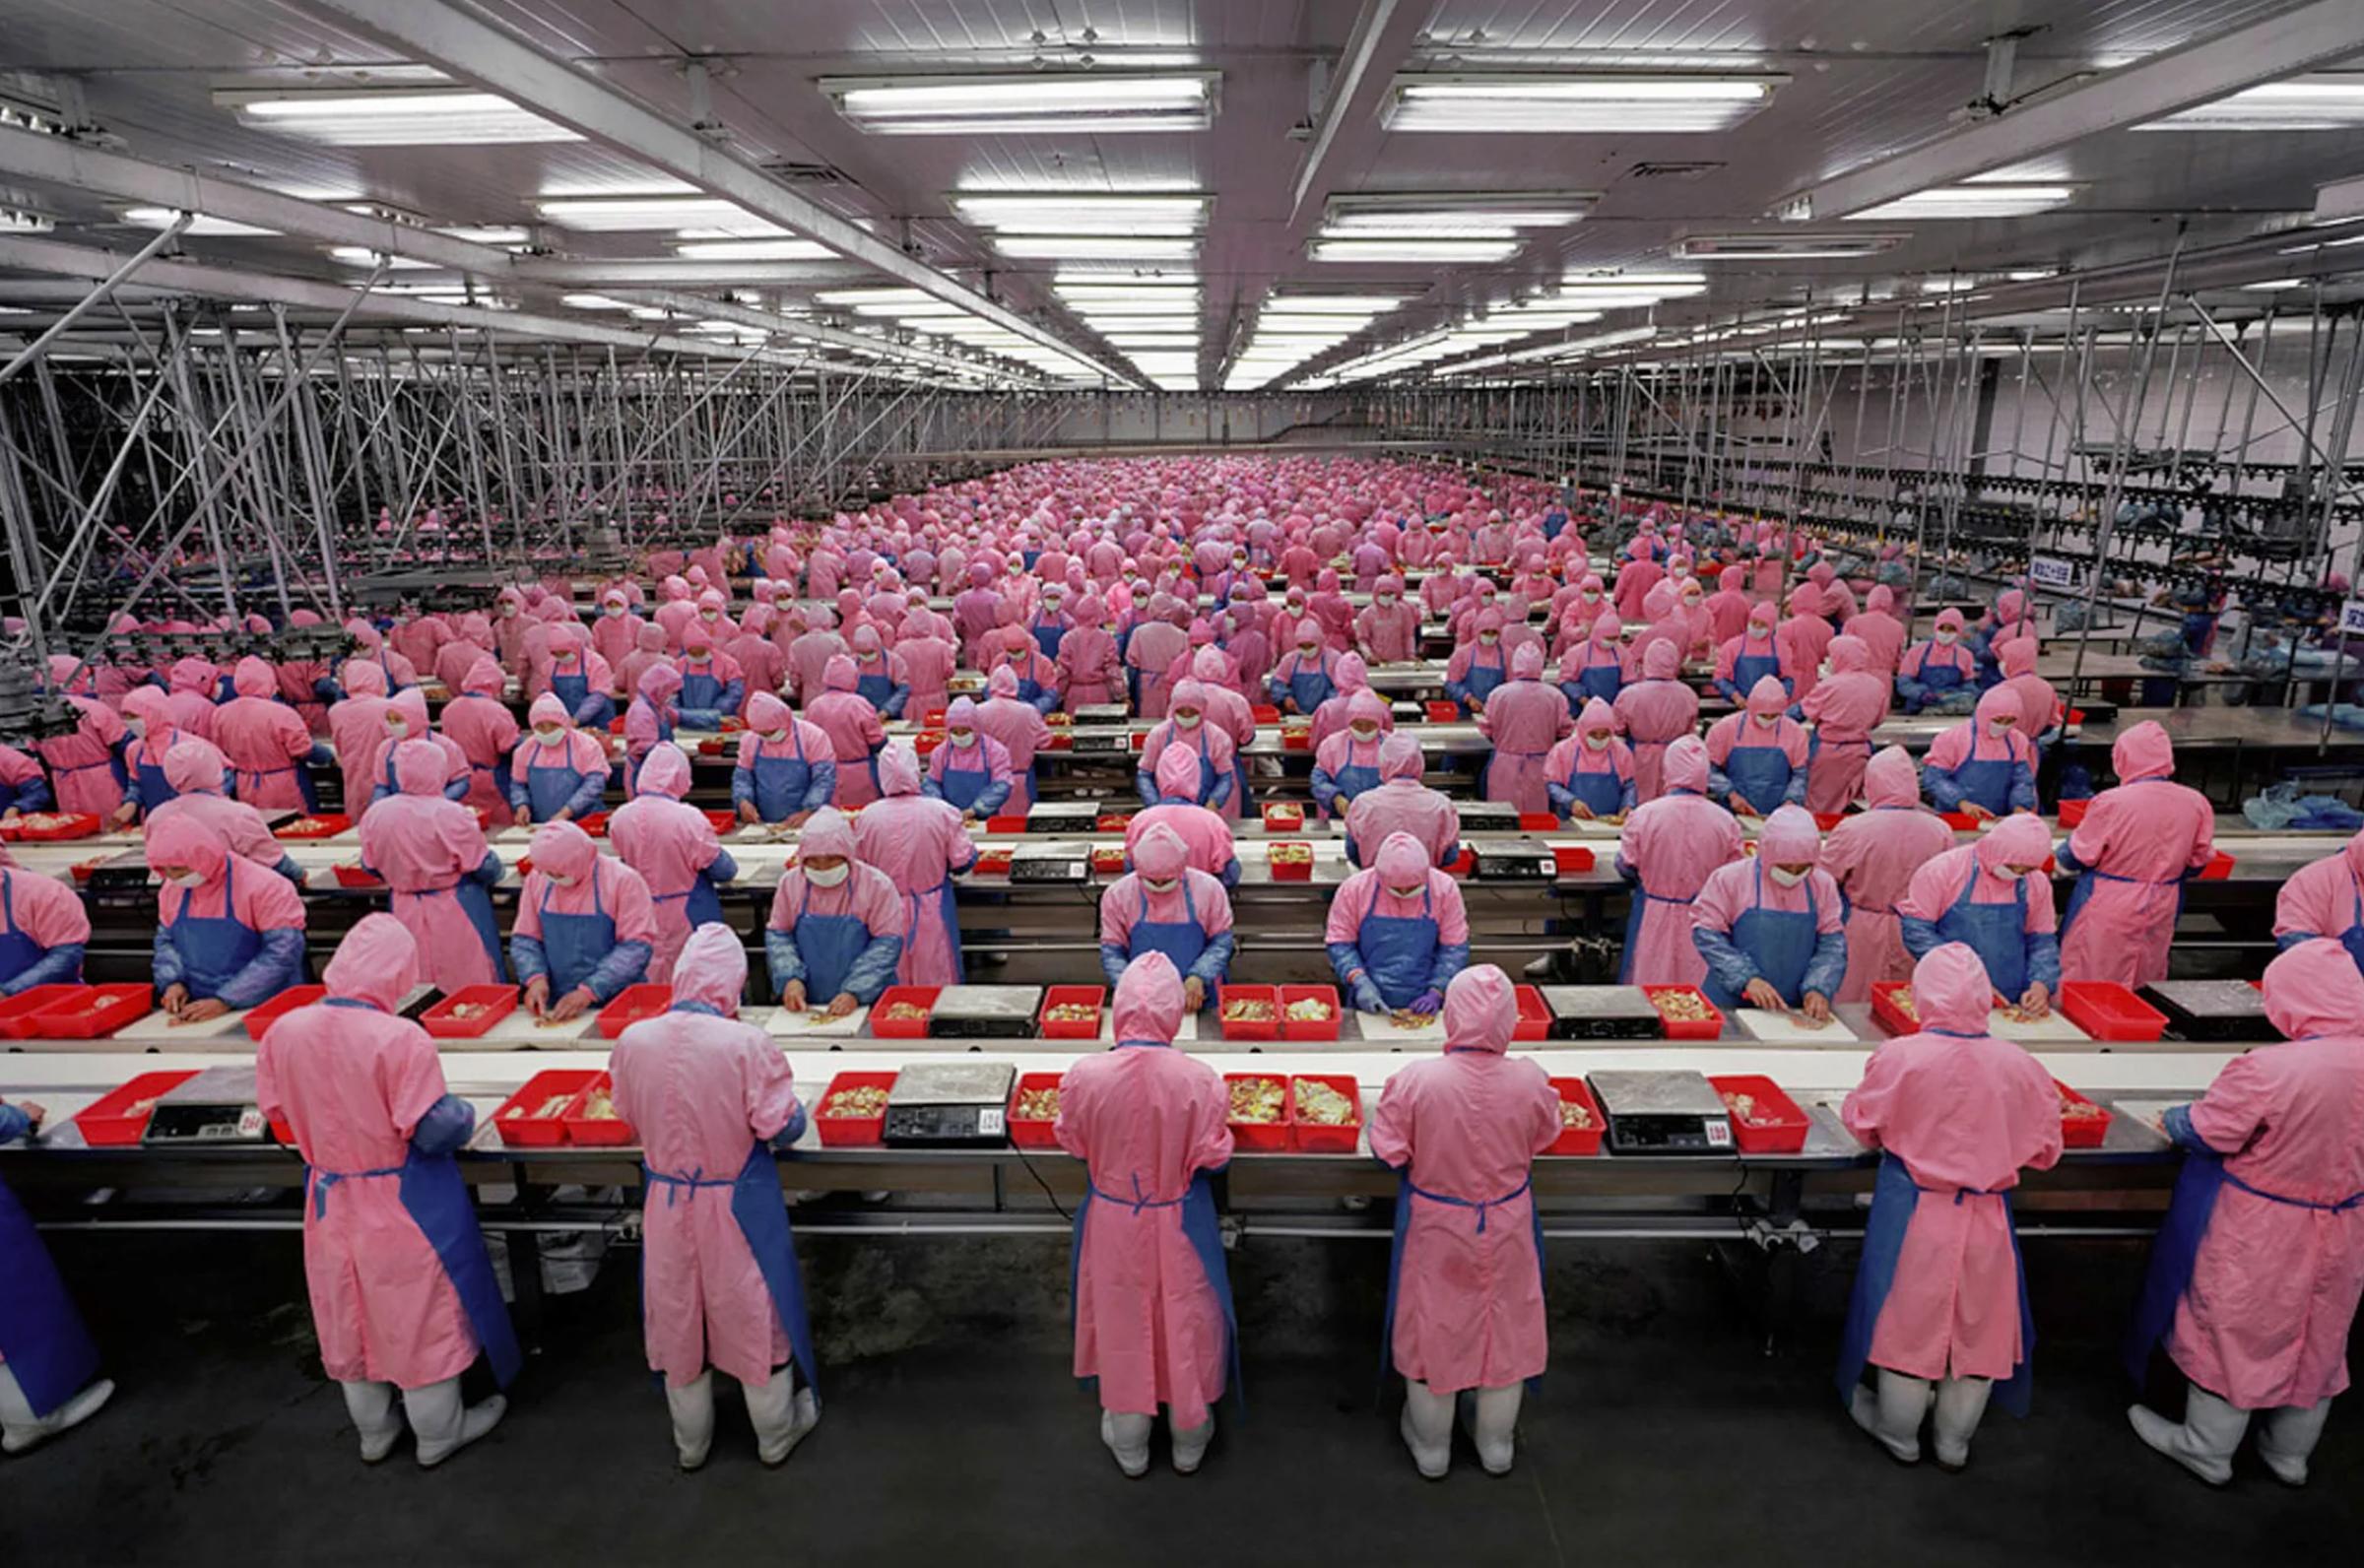 Edward Burtynsky Interior Print – Deda Hühnerprozesspflanze „Manufacturing #17“ aus der Provinz Jilin, China